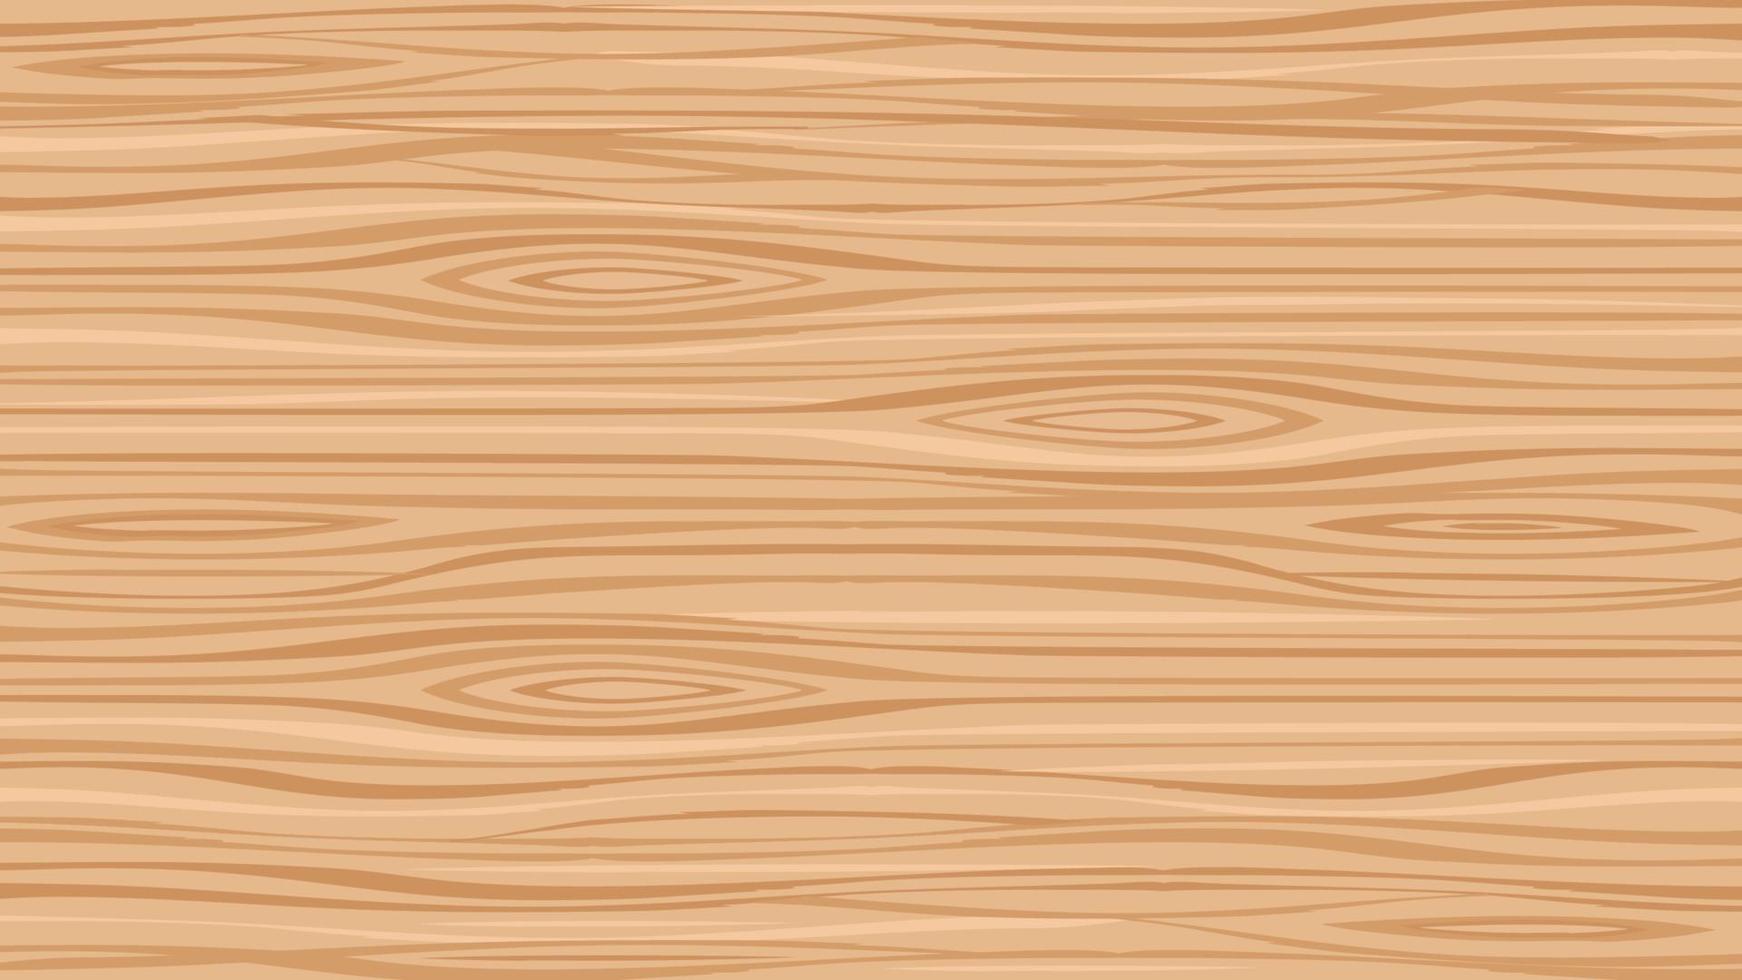 struttura in legno modello marrone chiaro disegno vettoriale sfondo